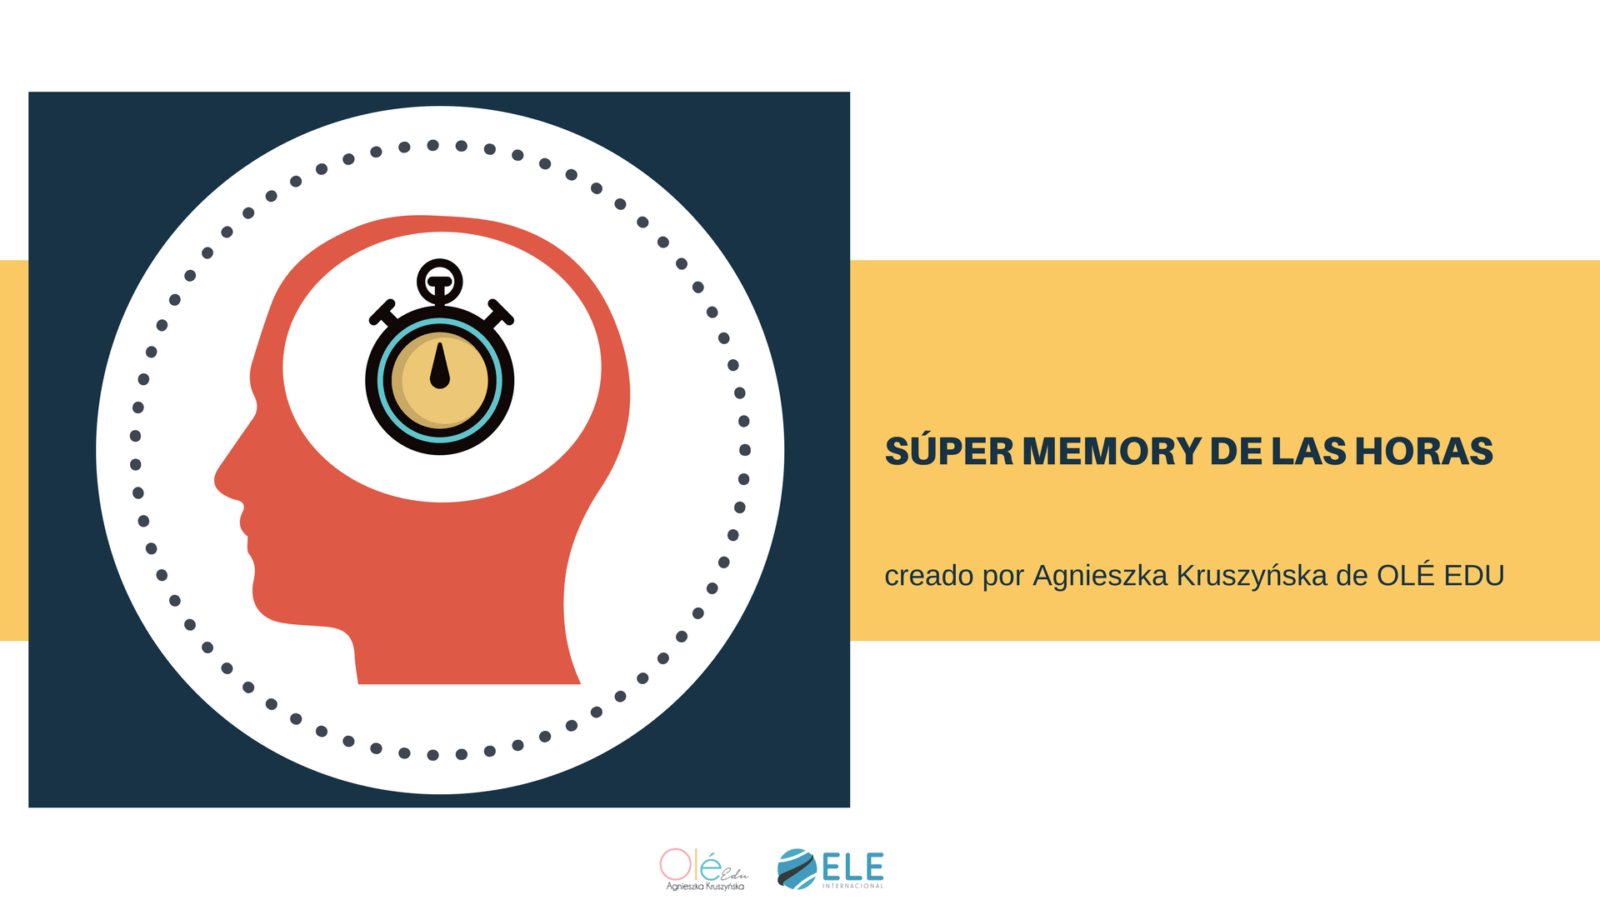 El memory de las horas es una actividad ideal para conocer más sobre el tiempo en clase de español. #spanishteacher #activity